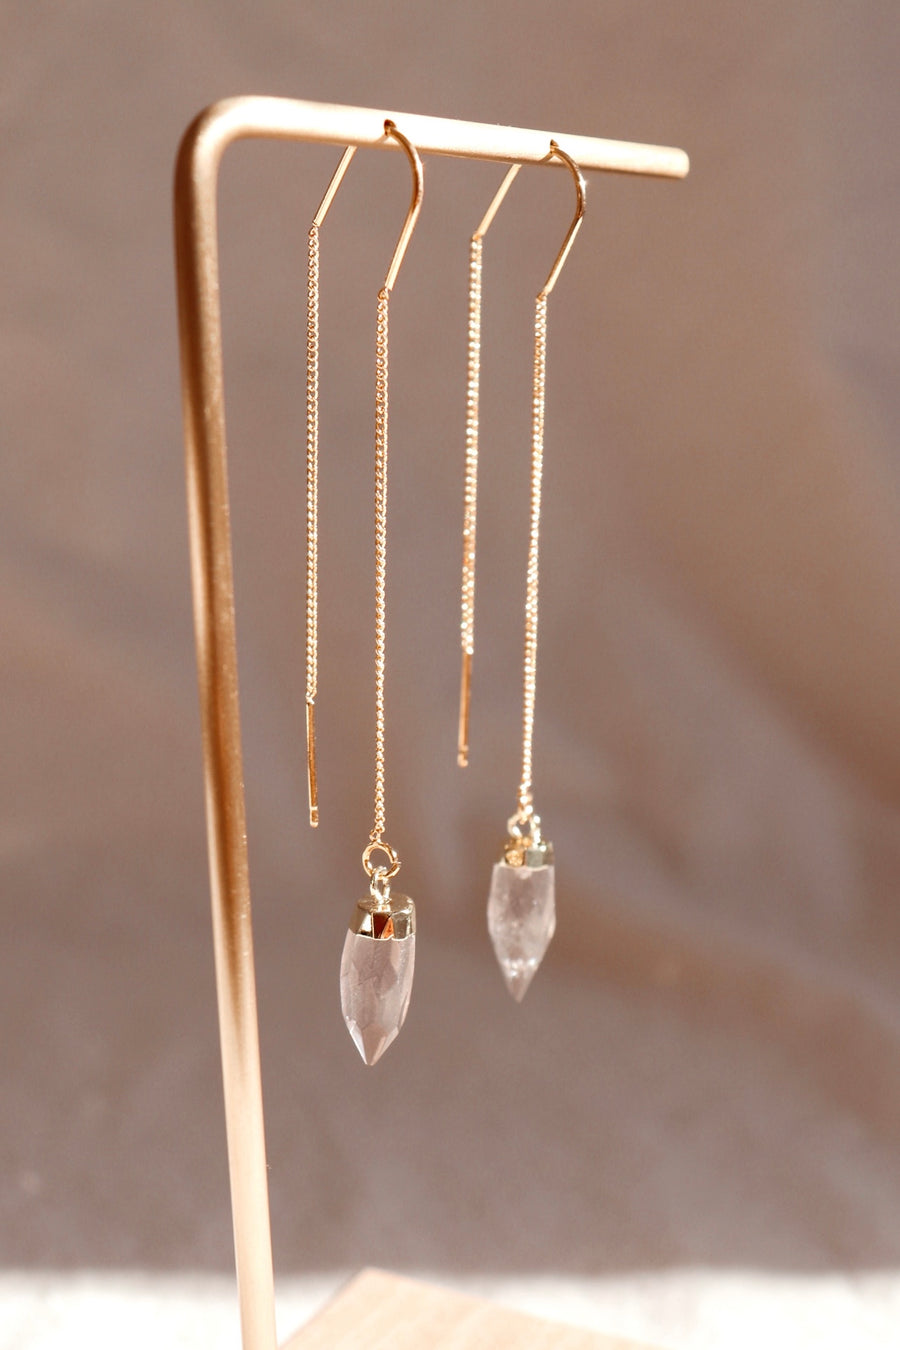 Smoky quartz threader earrings